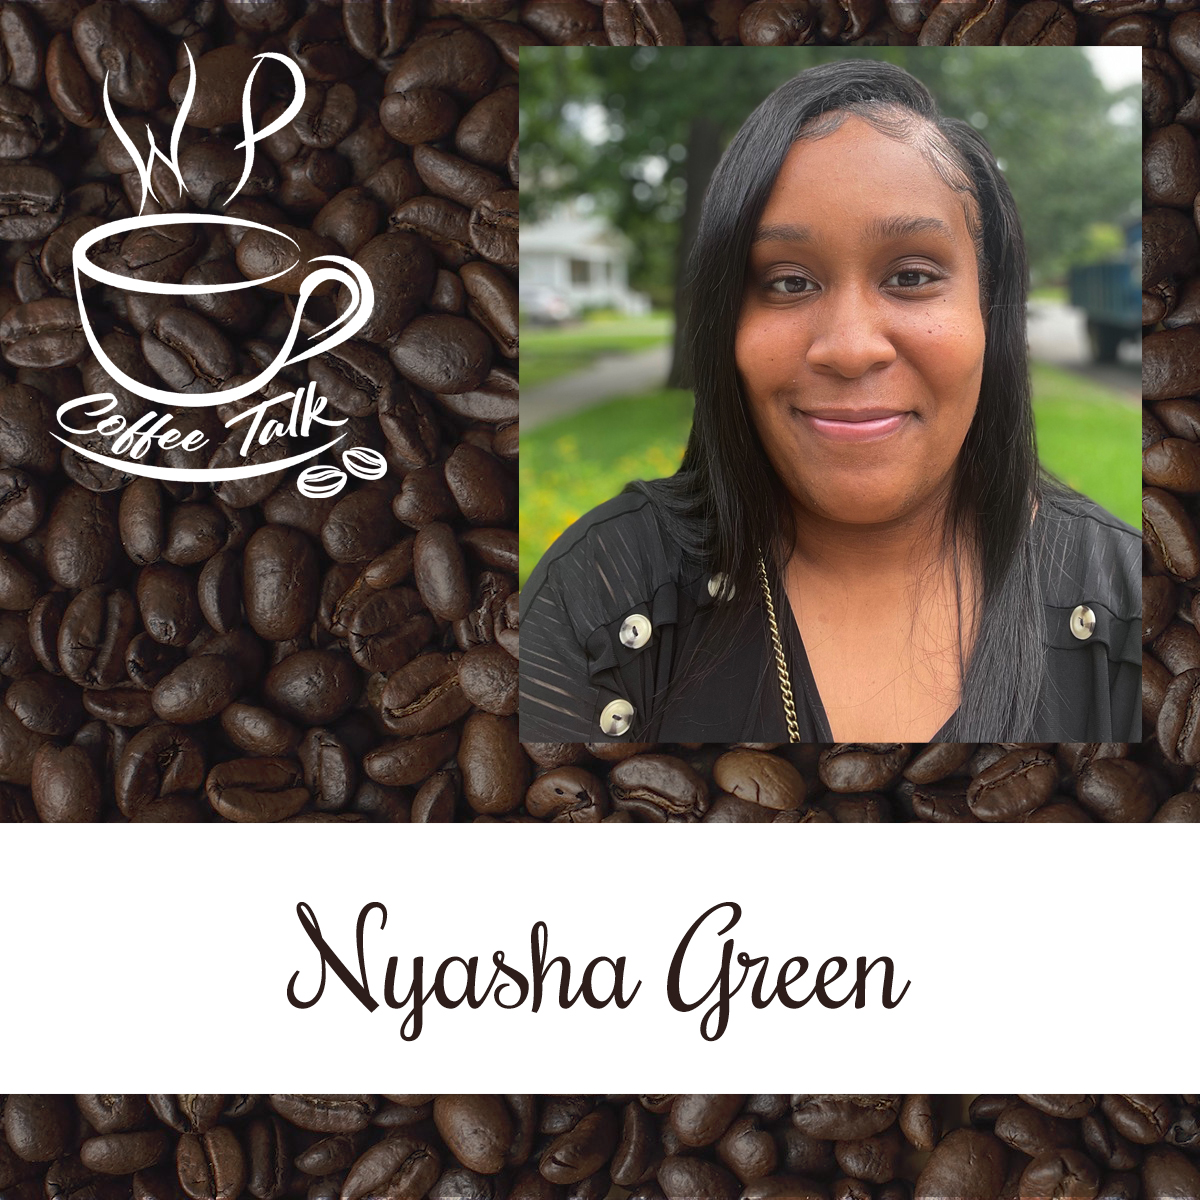 WPCoffeeTalk: Nyasha Green